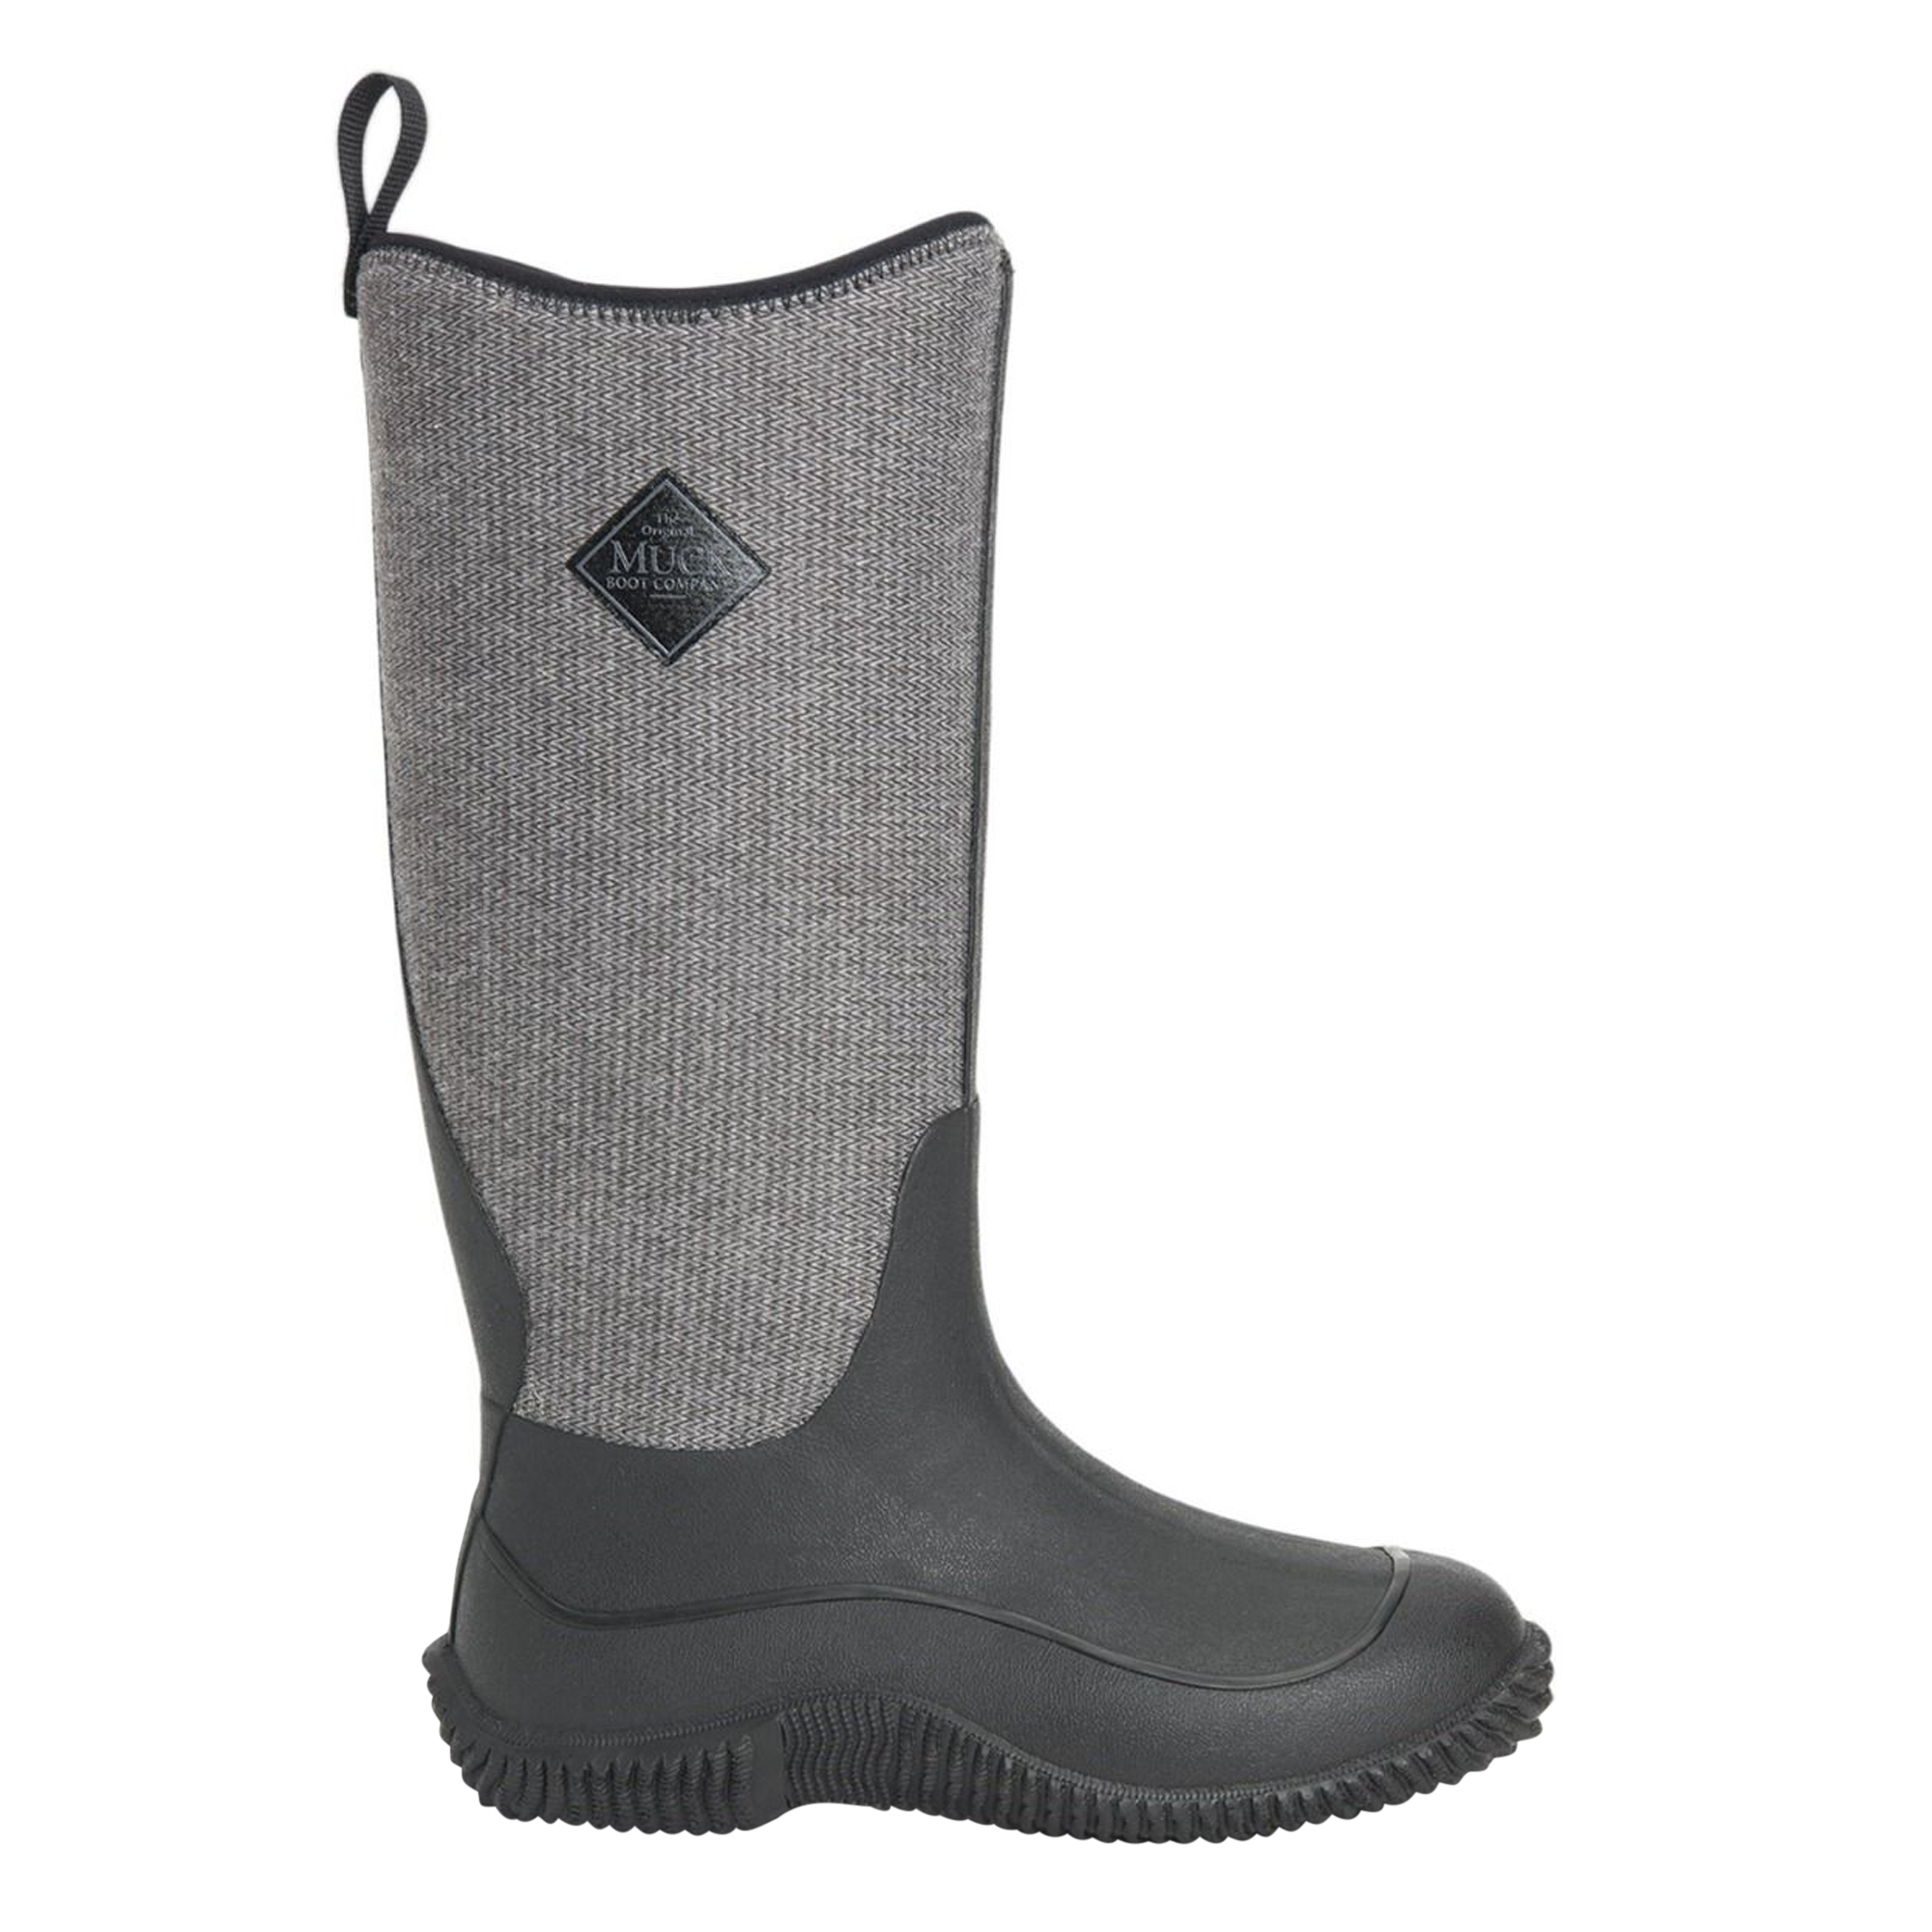 Botas De Agua Diseño Espiguillas Muck Boots Hale - negro-gris - 